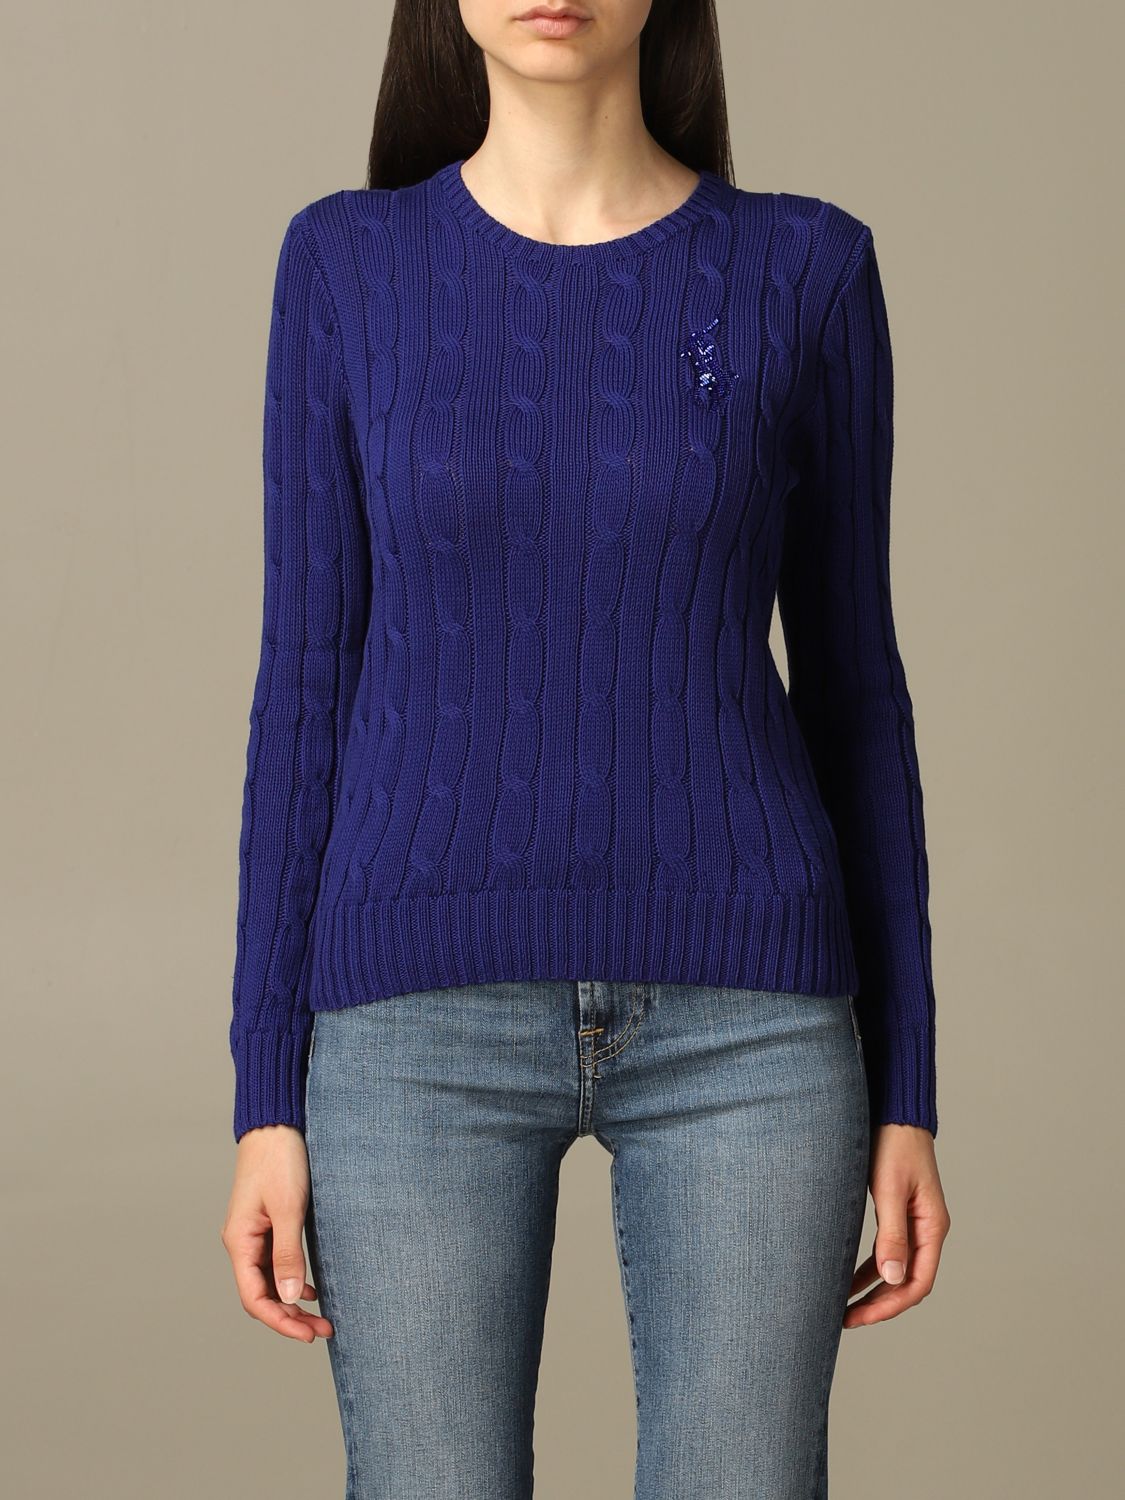 ralph lauren blue sweater women's